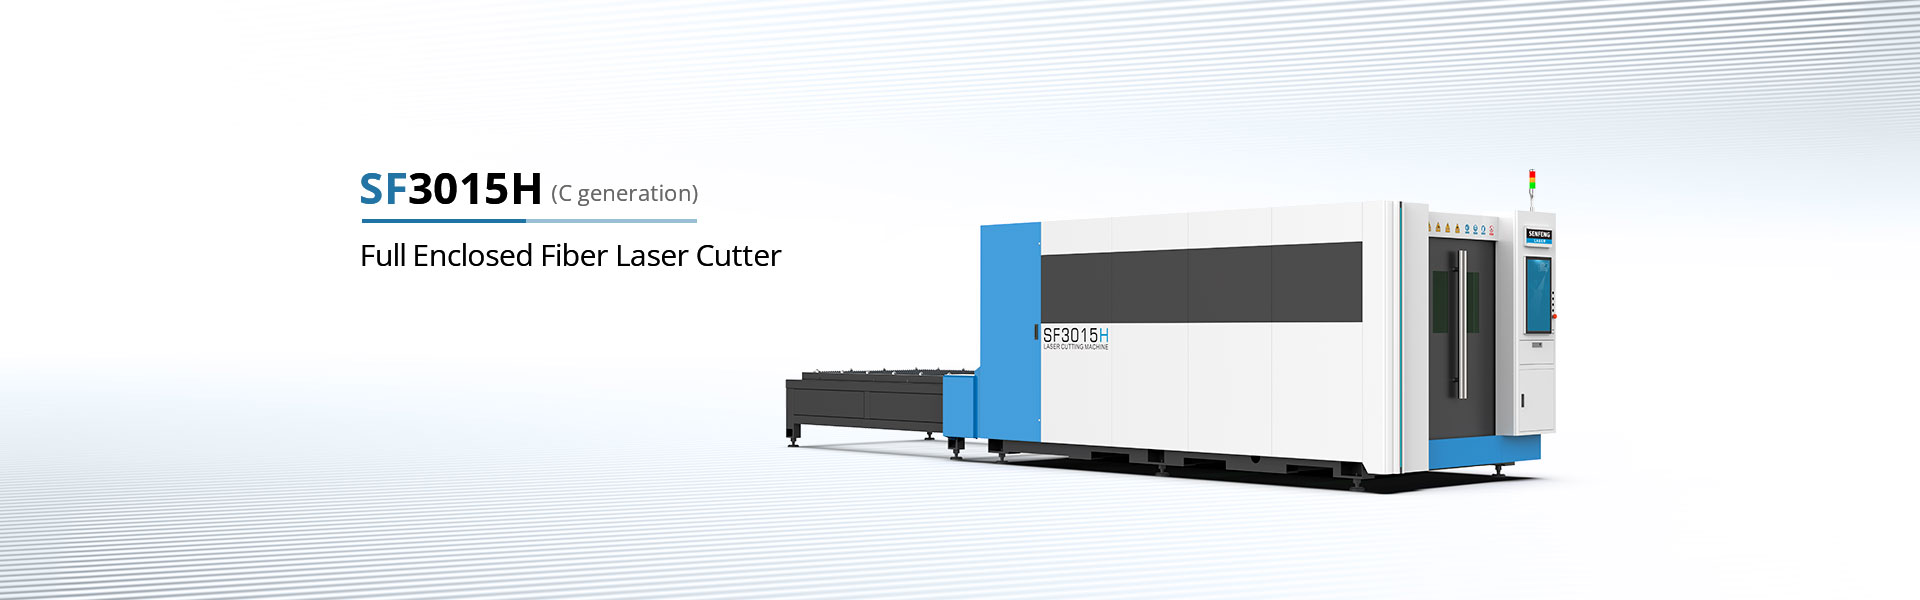 Full enclosed fiber laser cutter